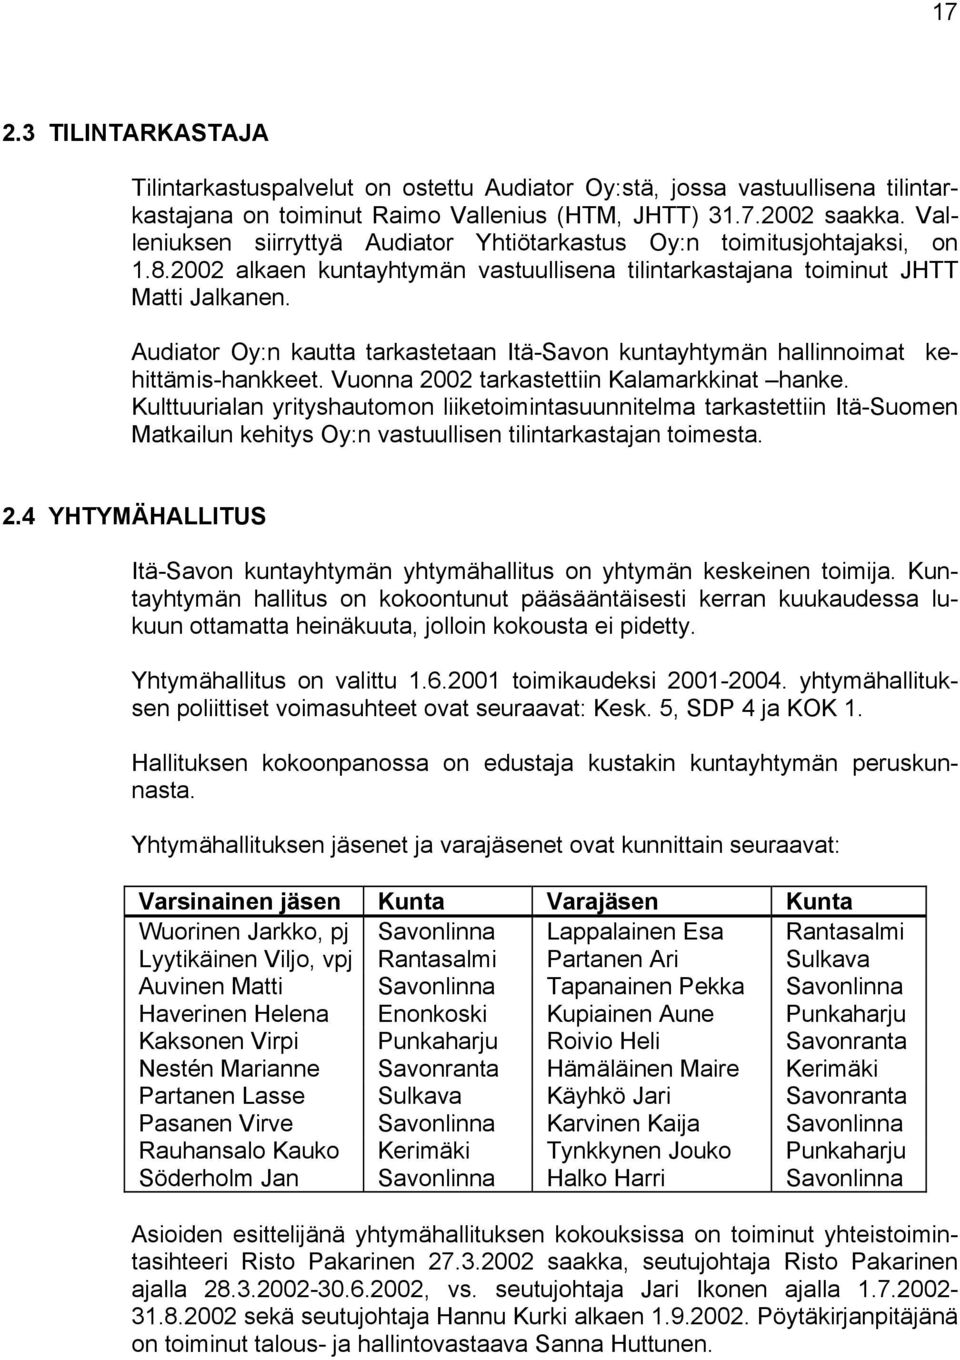 Audiator Oy:n kautta tarkastetaan Itä-Savon kuntayhtymän hallinnoimat kehittämis-hankkeet. Vuonna 2002 tarkastettiin Kalamarkkinat hanke.